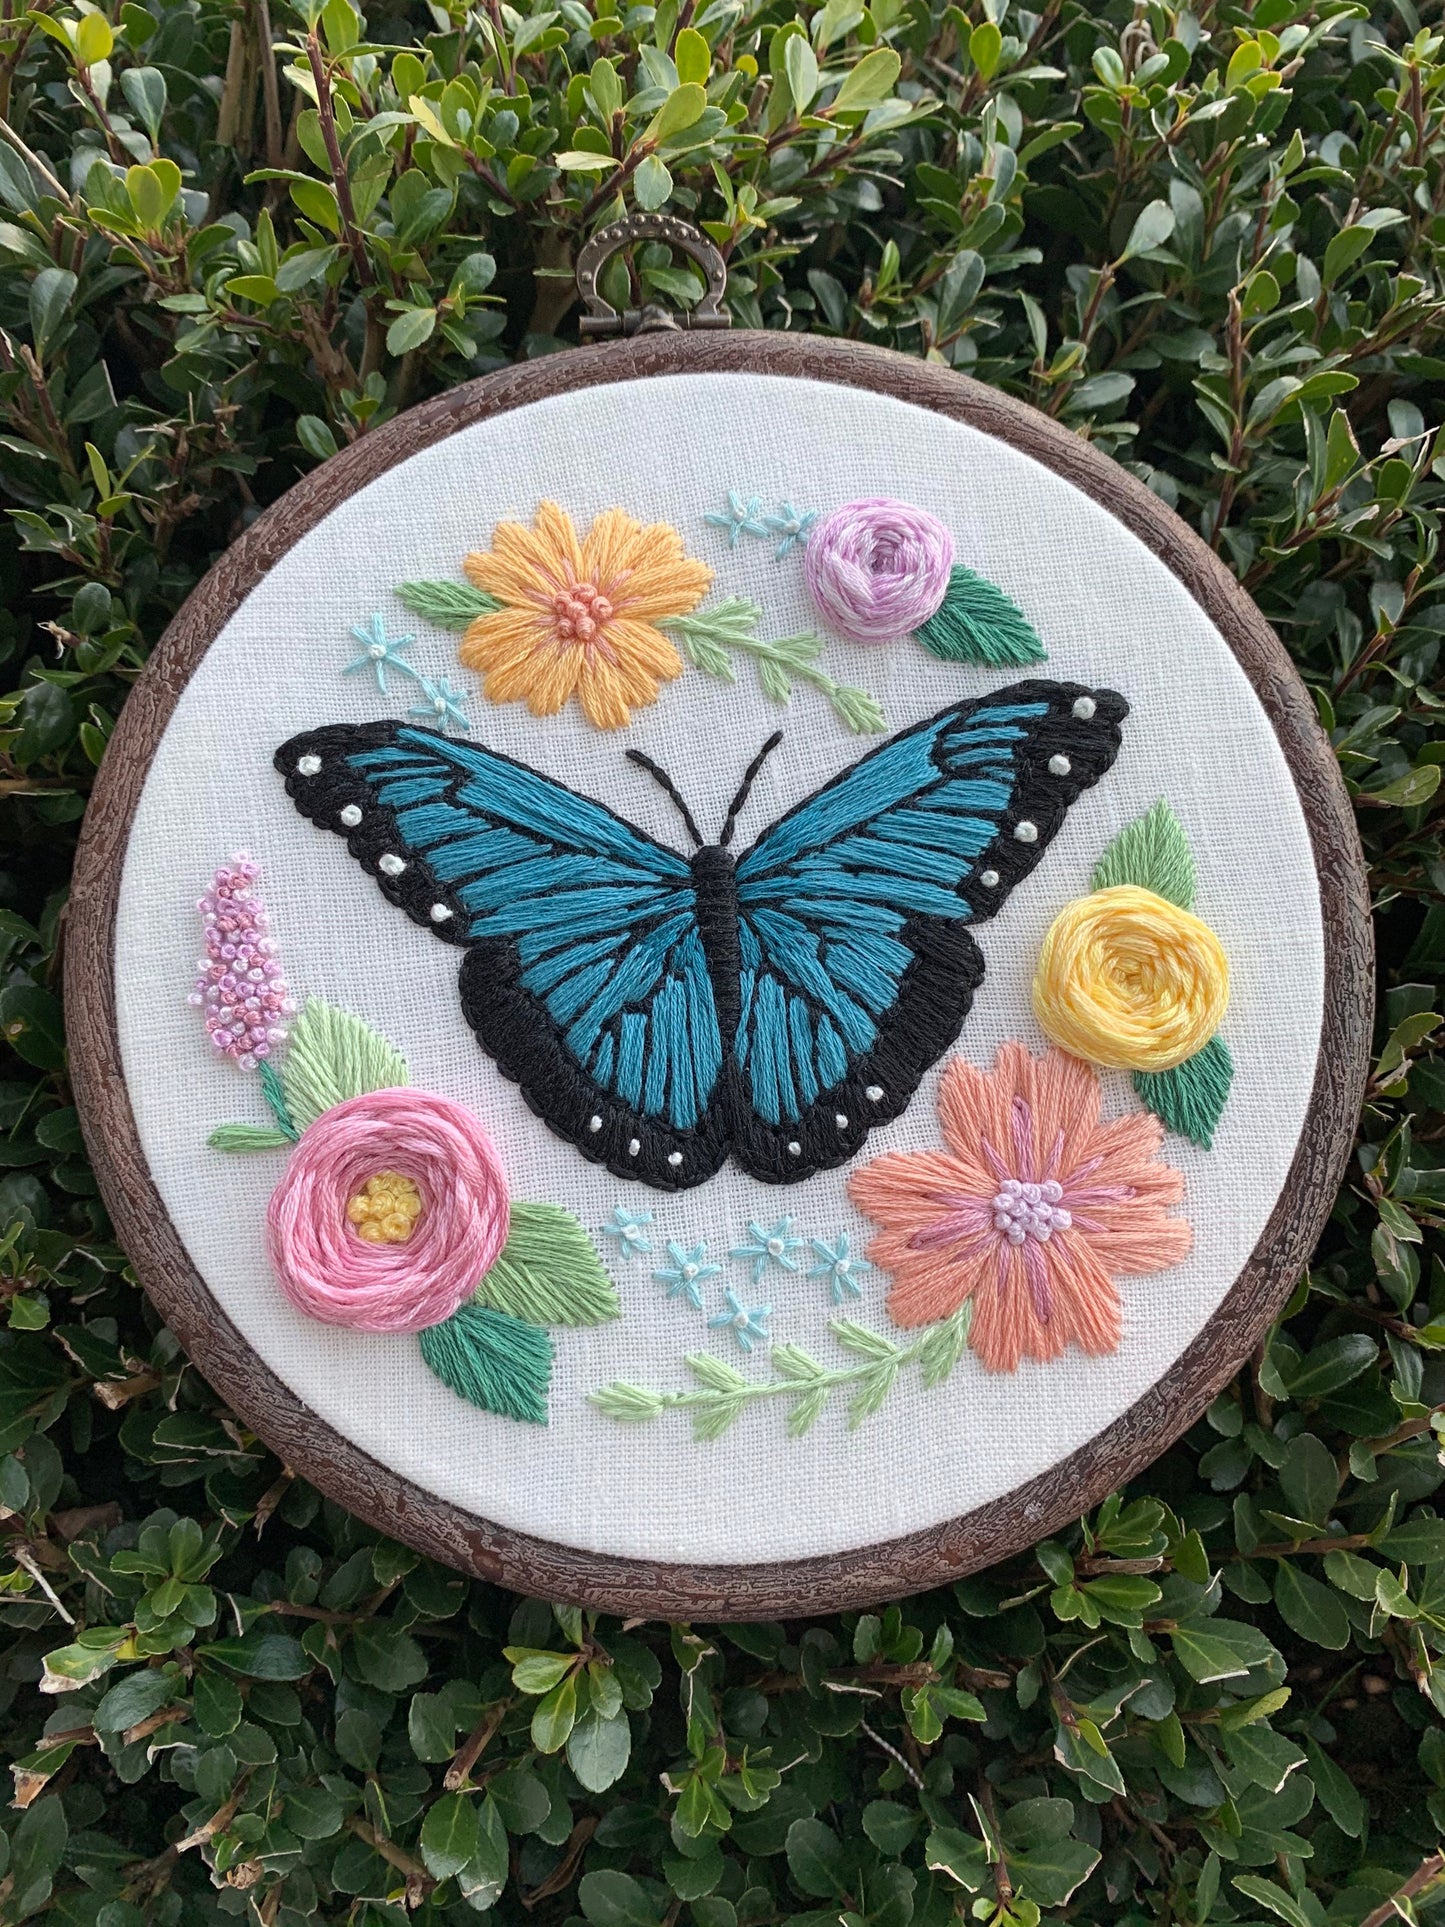 PDF Pattern - Butterfly Garden, Intermediate/Advanced Embroidery Pattern